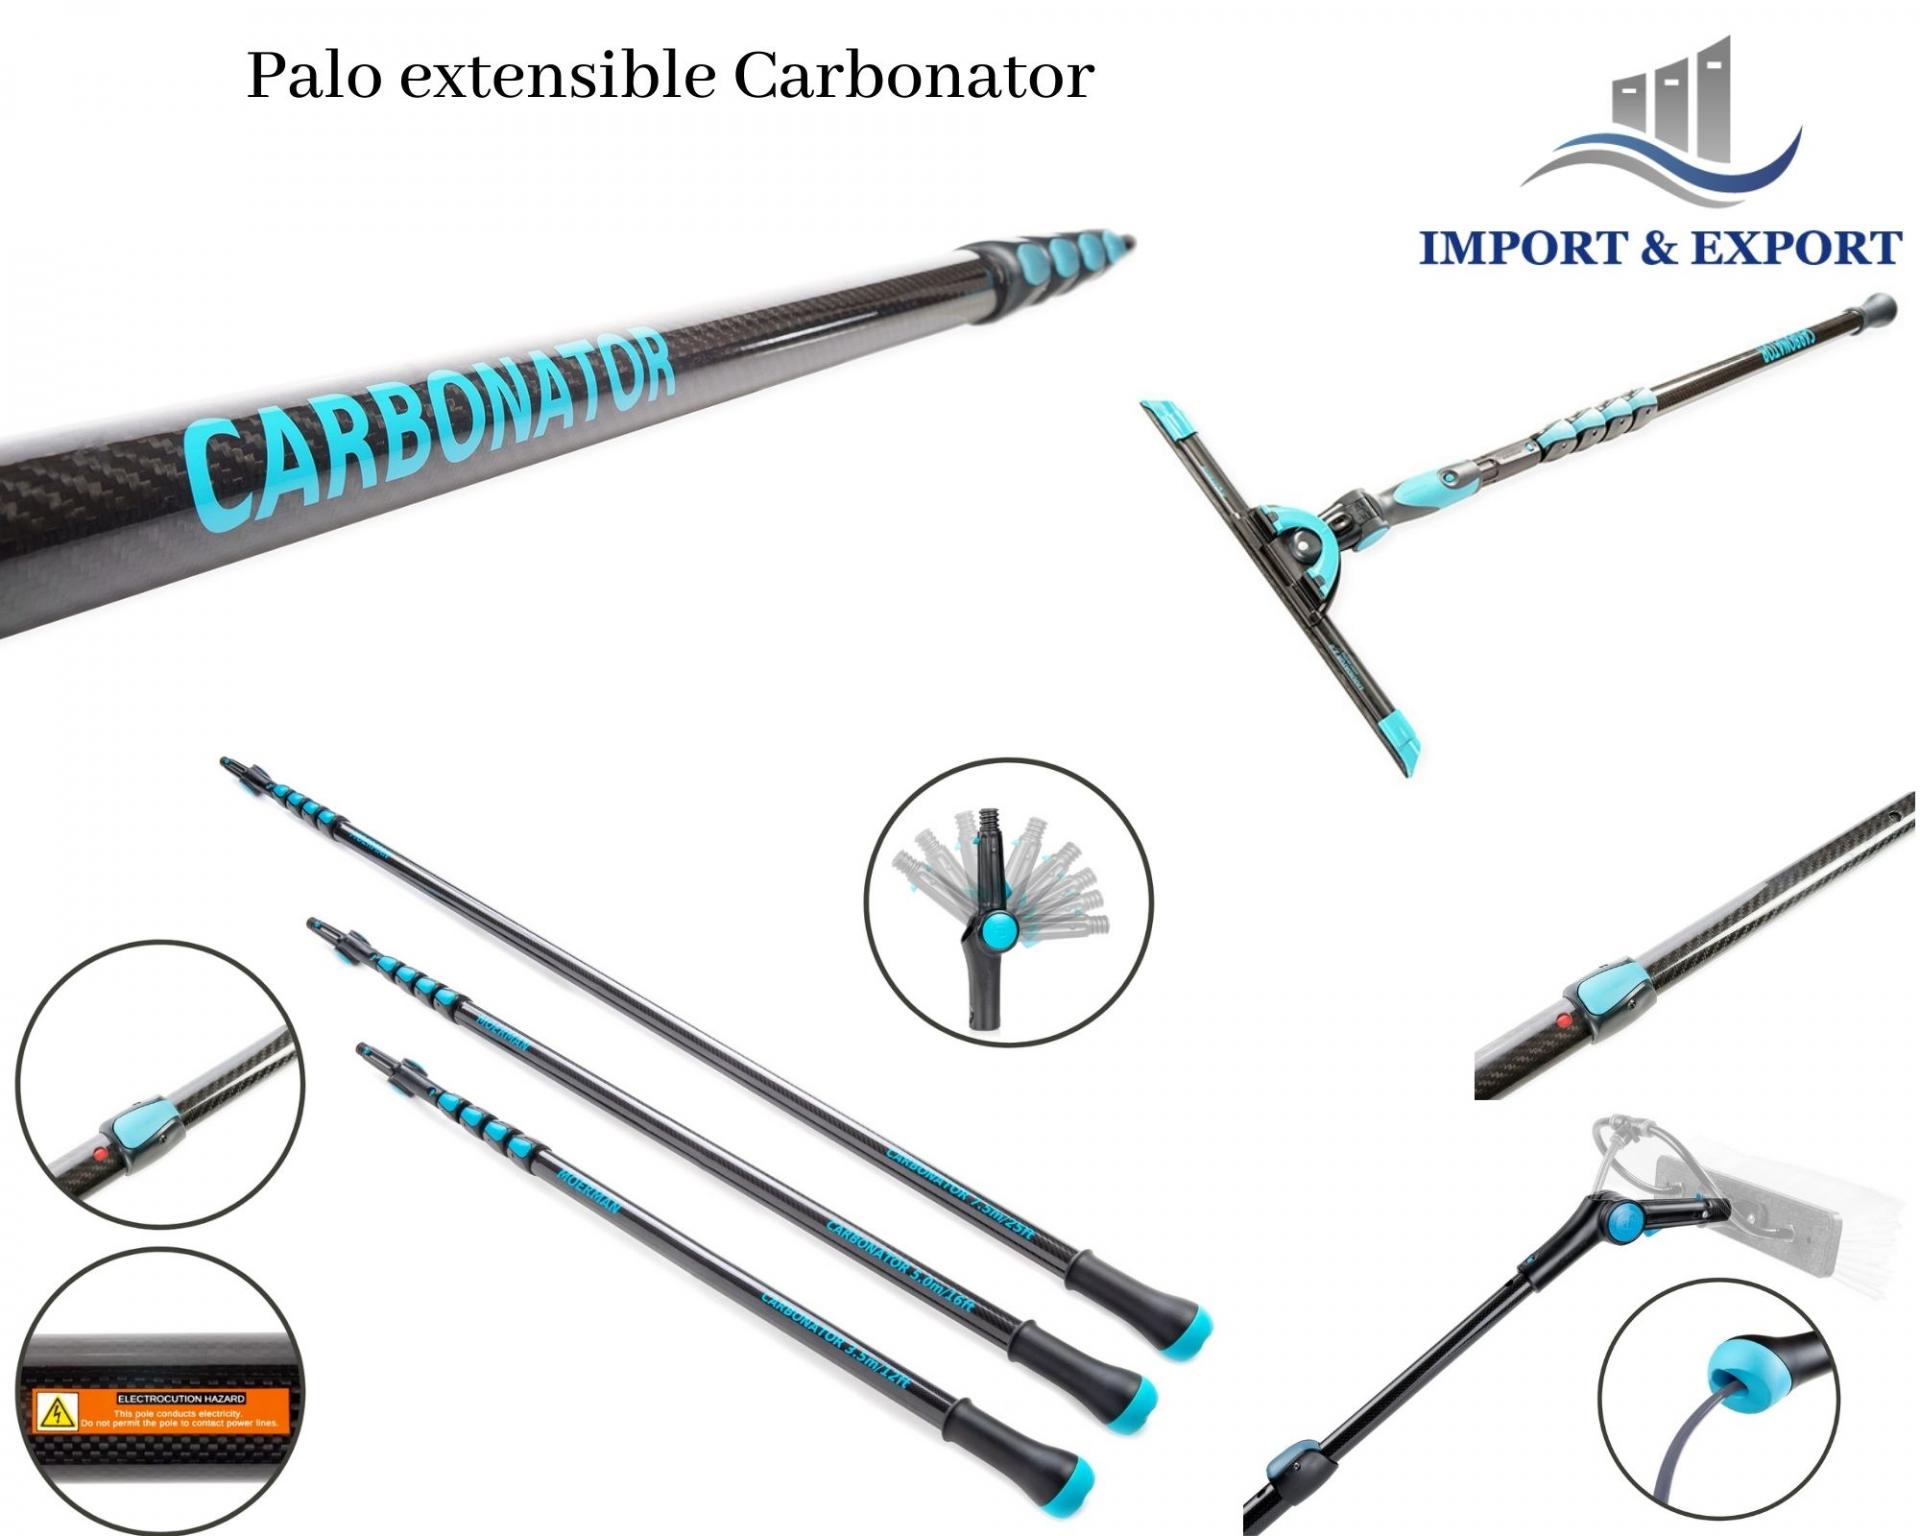 Palo extensible limpiacristales Carbonator